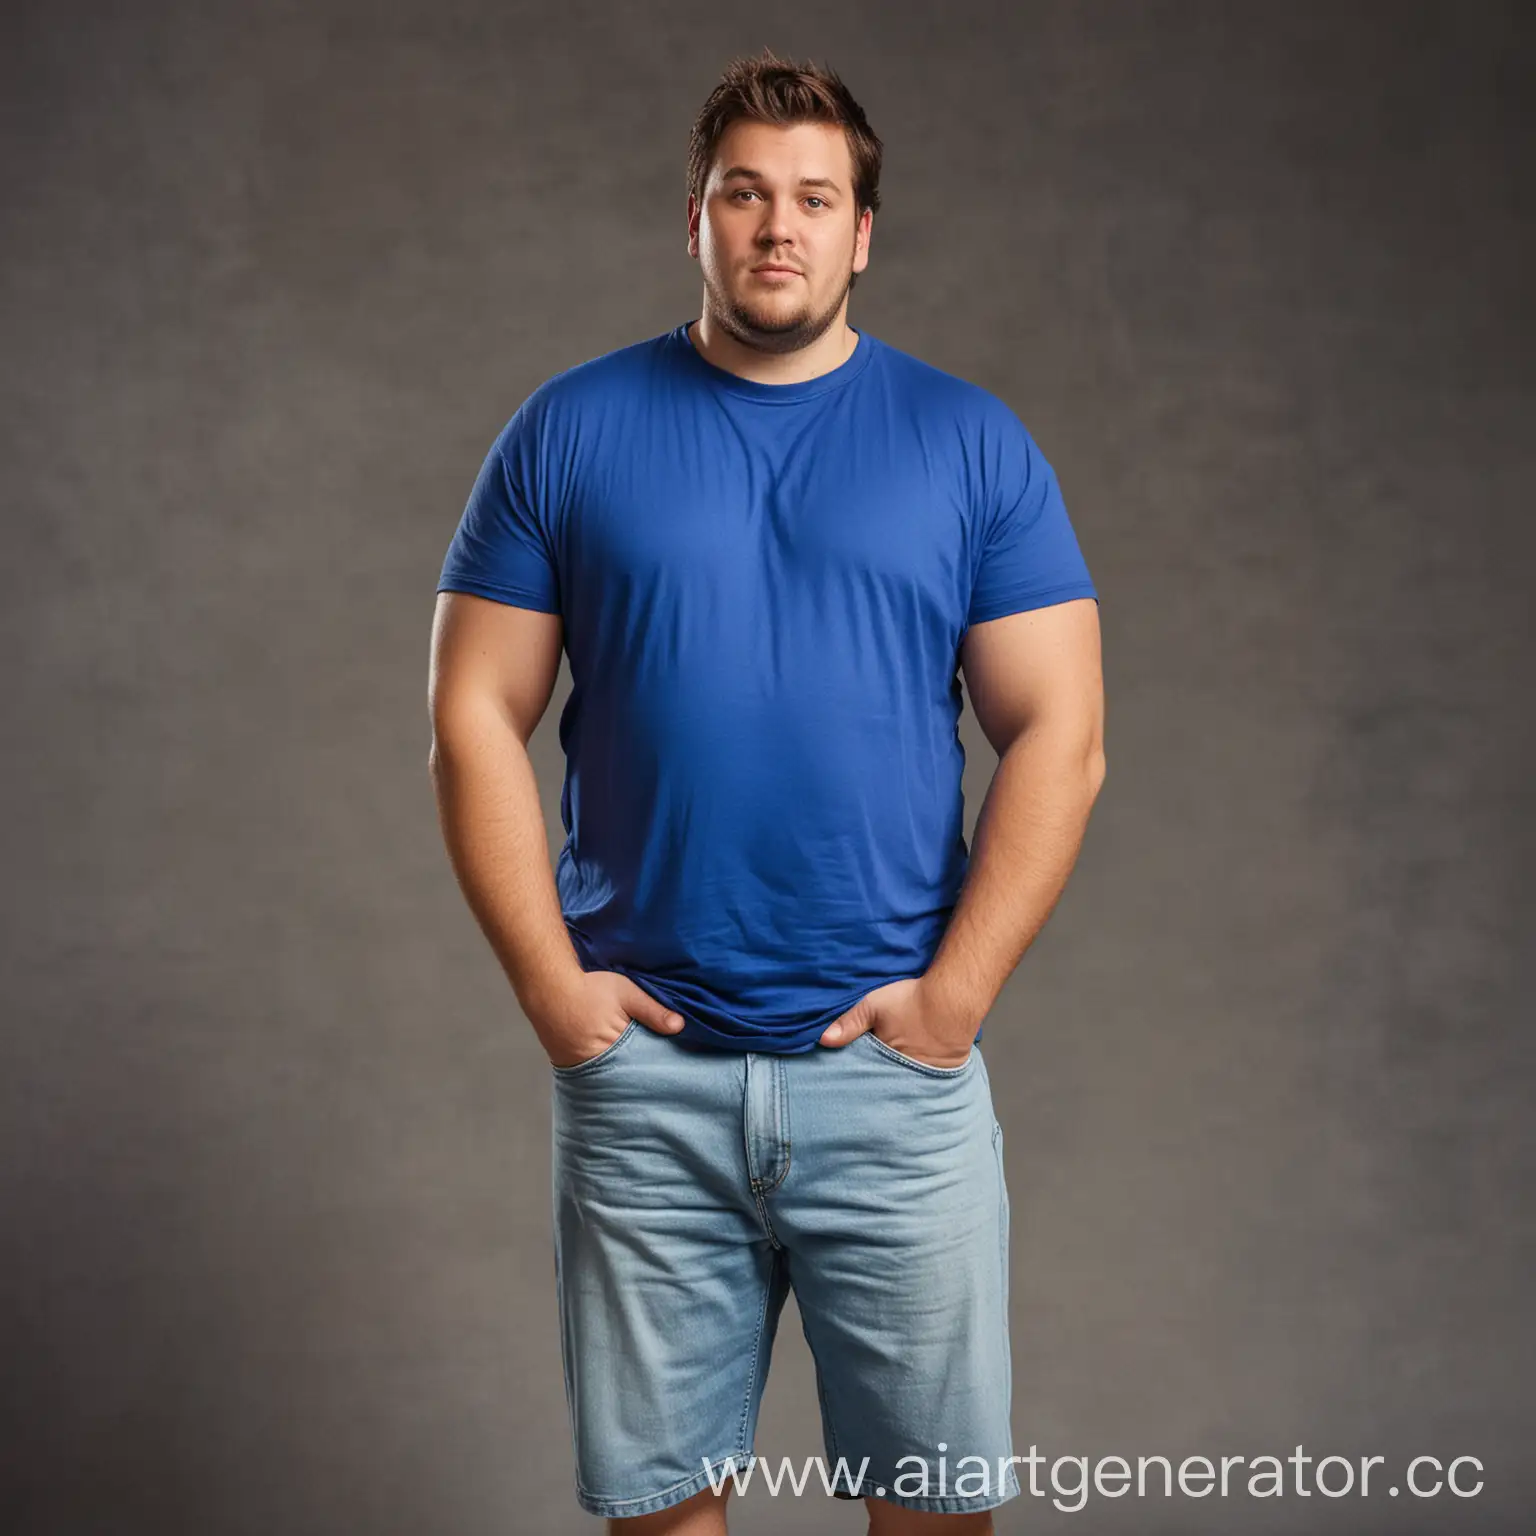 толстый мужчина в футболке синего цвета